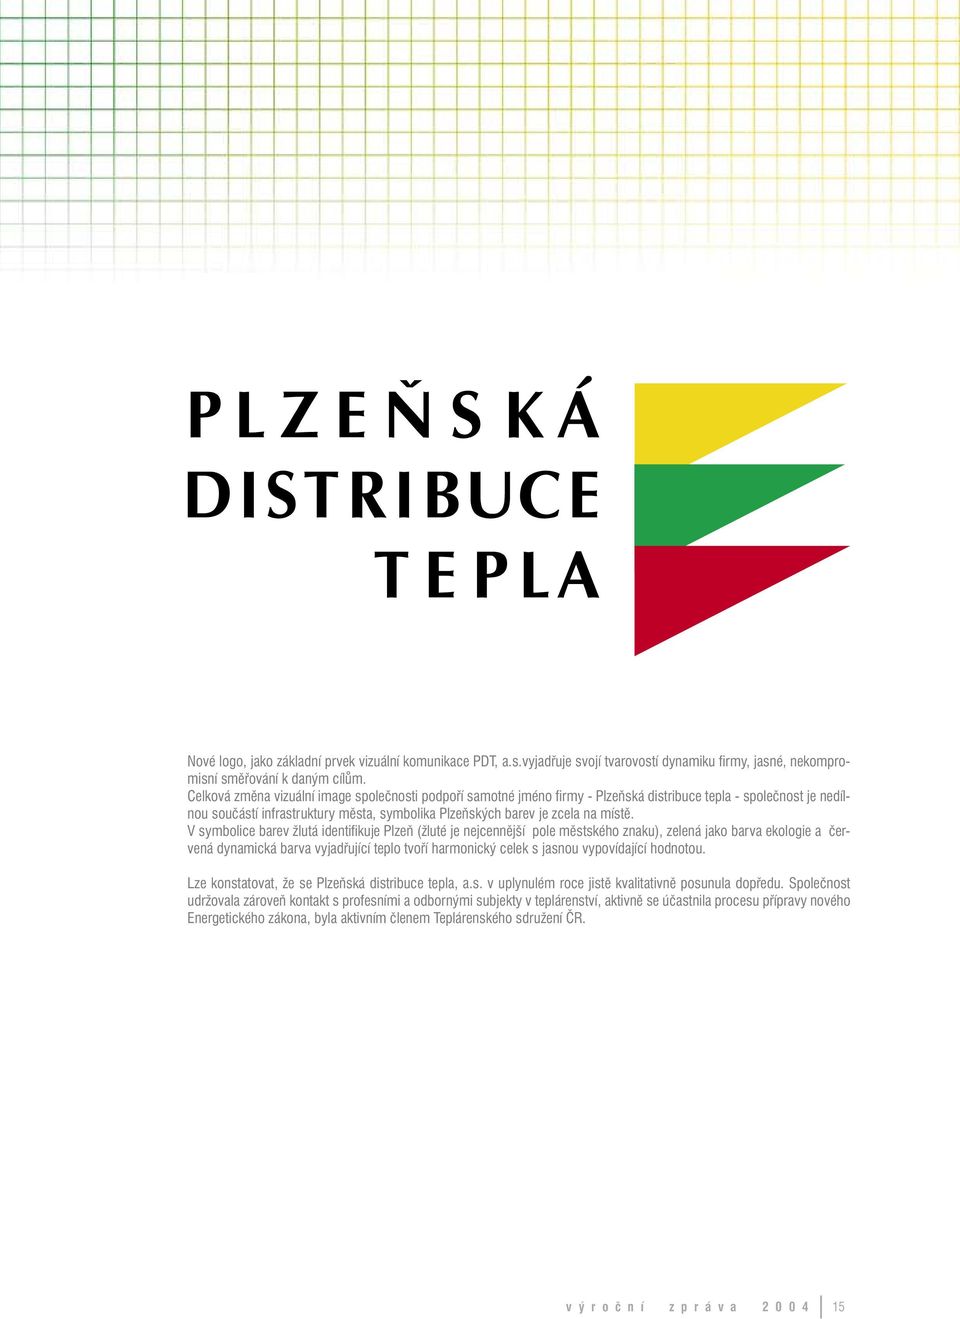 V symbolice barev žlutá identifikuje Plzeň (žluté je nejcennější pole městského znaku), zelená jako barva ekologie a červená dynamická barva vyjadřující teplo tvoří harmonický celek s jasnou